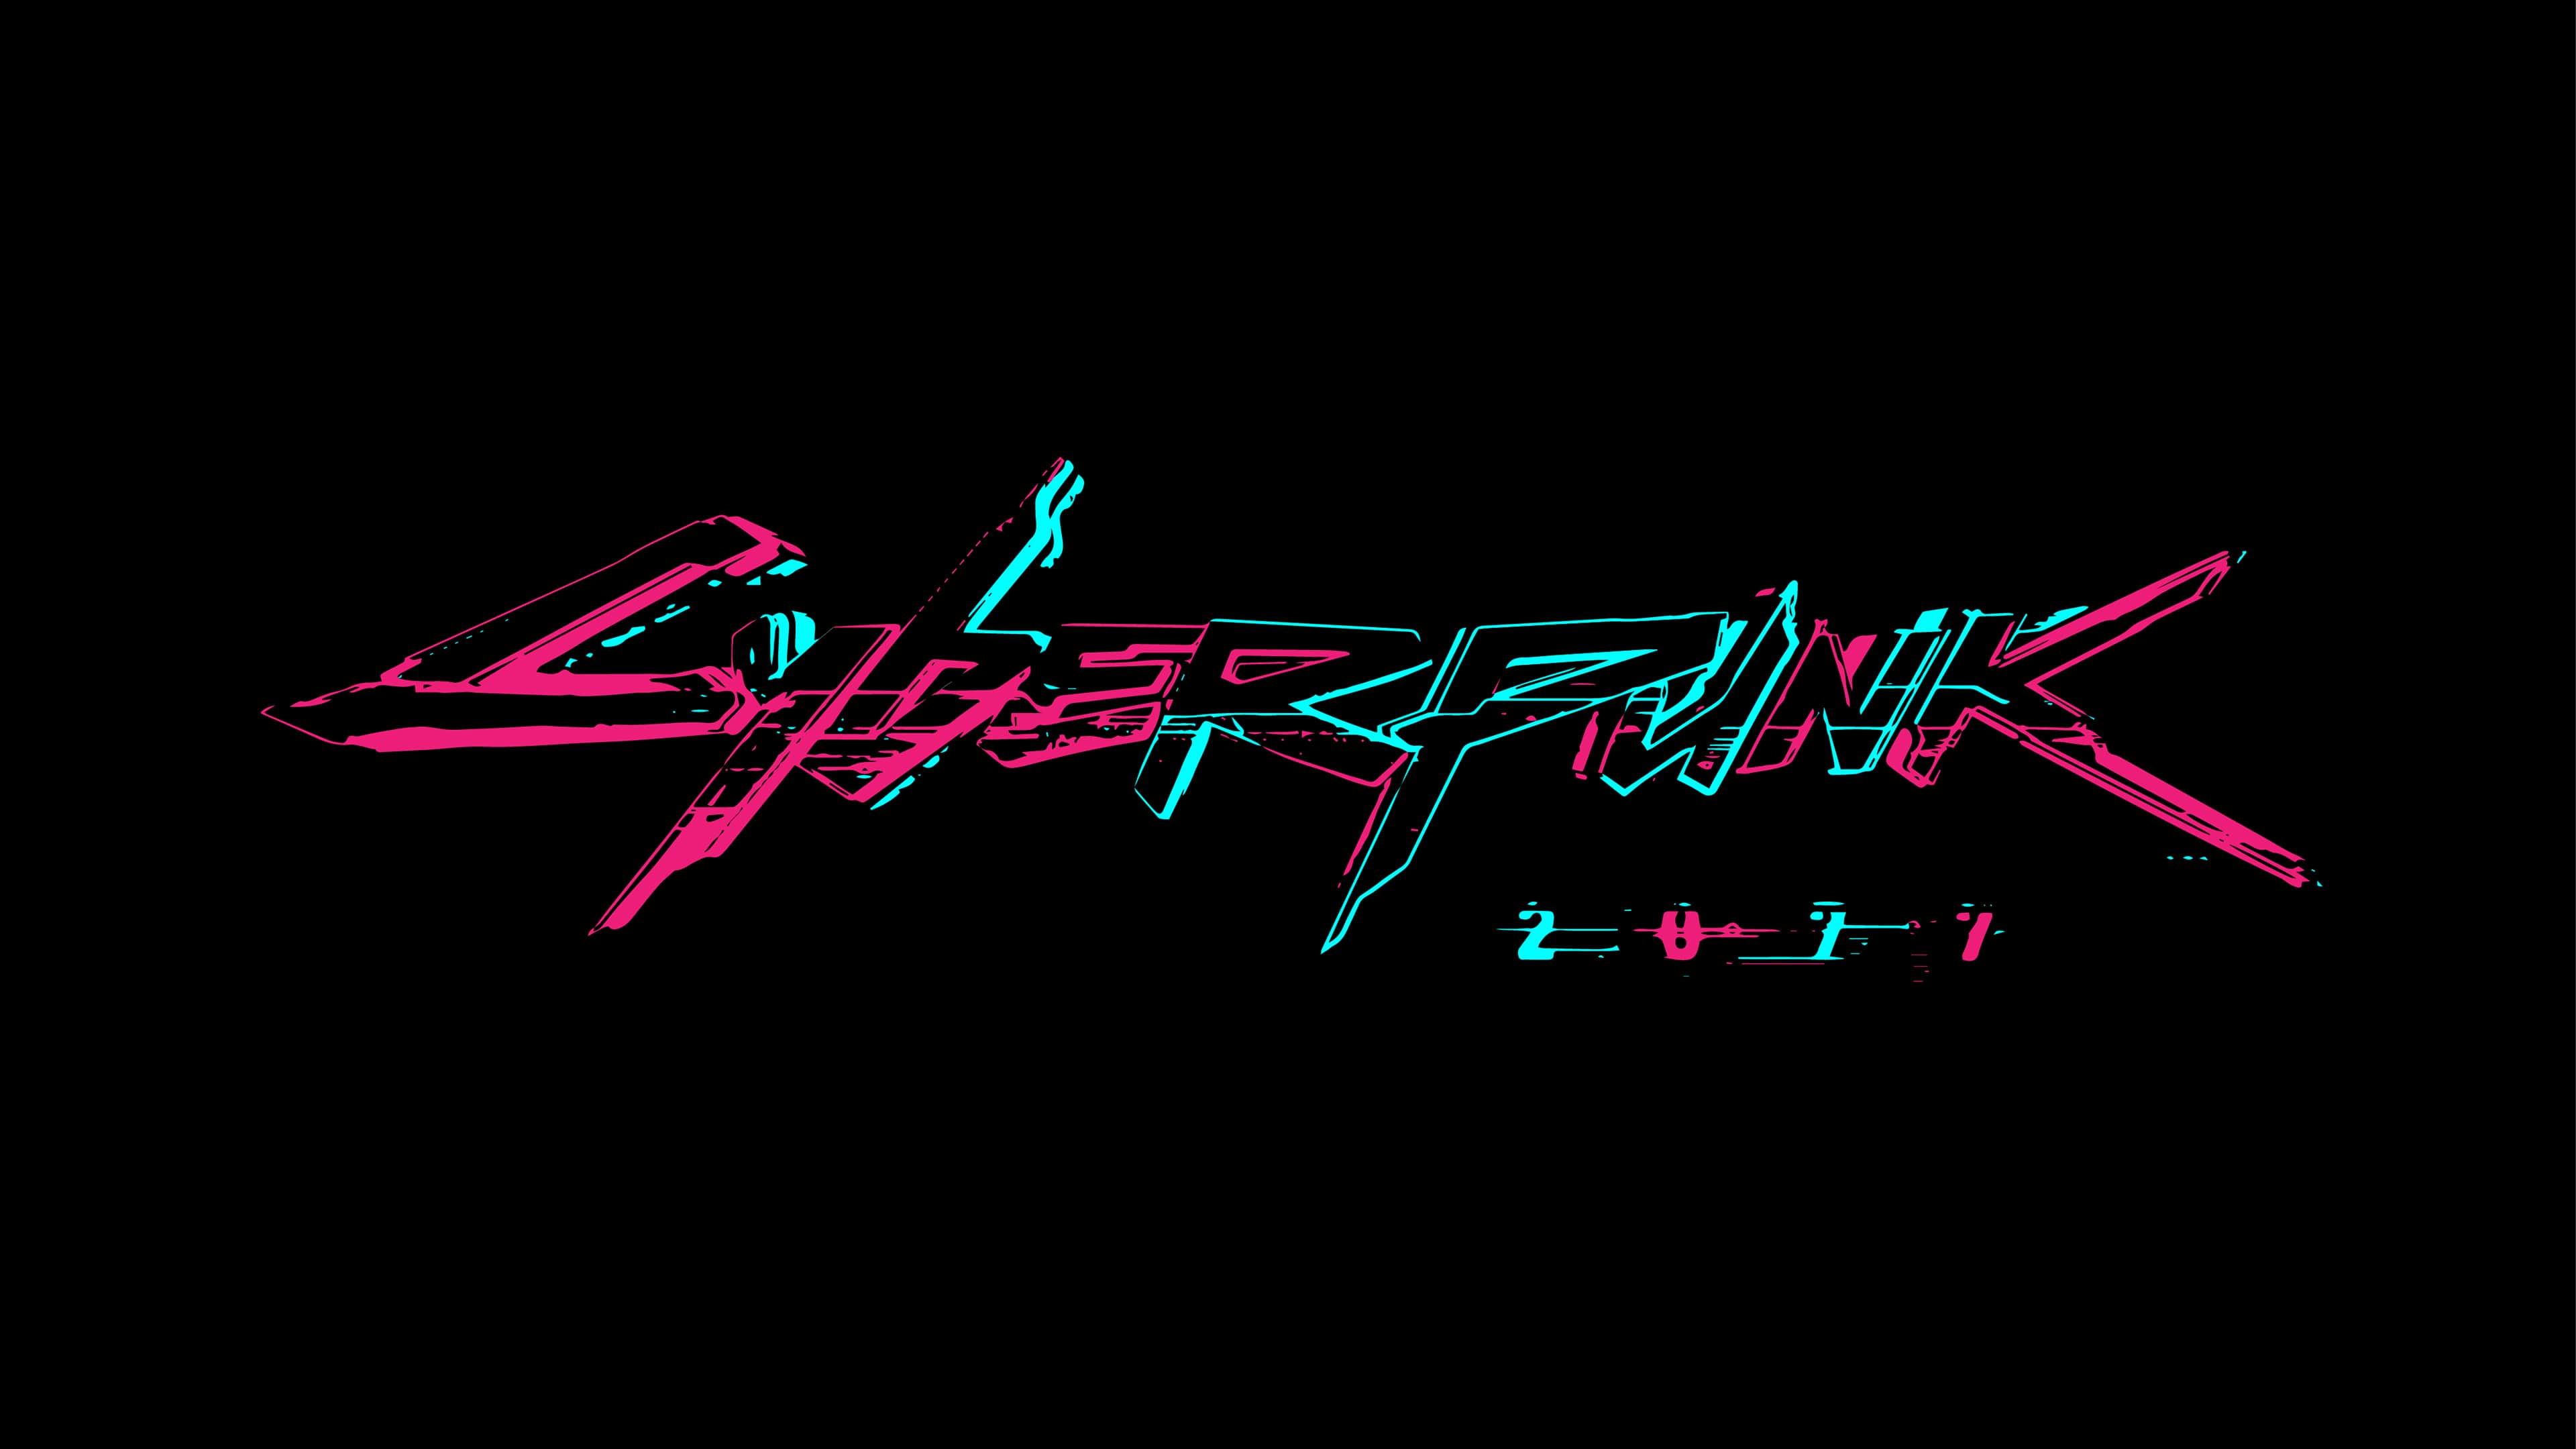 Hình nền logo 3840x2160 Cyberpunk 2077 - Hình nền HD miễn phí tuyệt vời